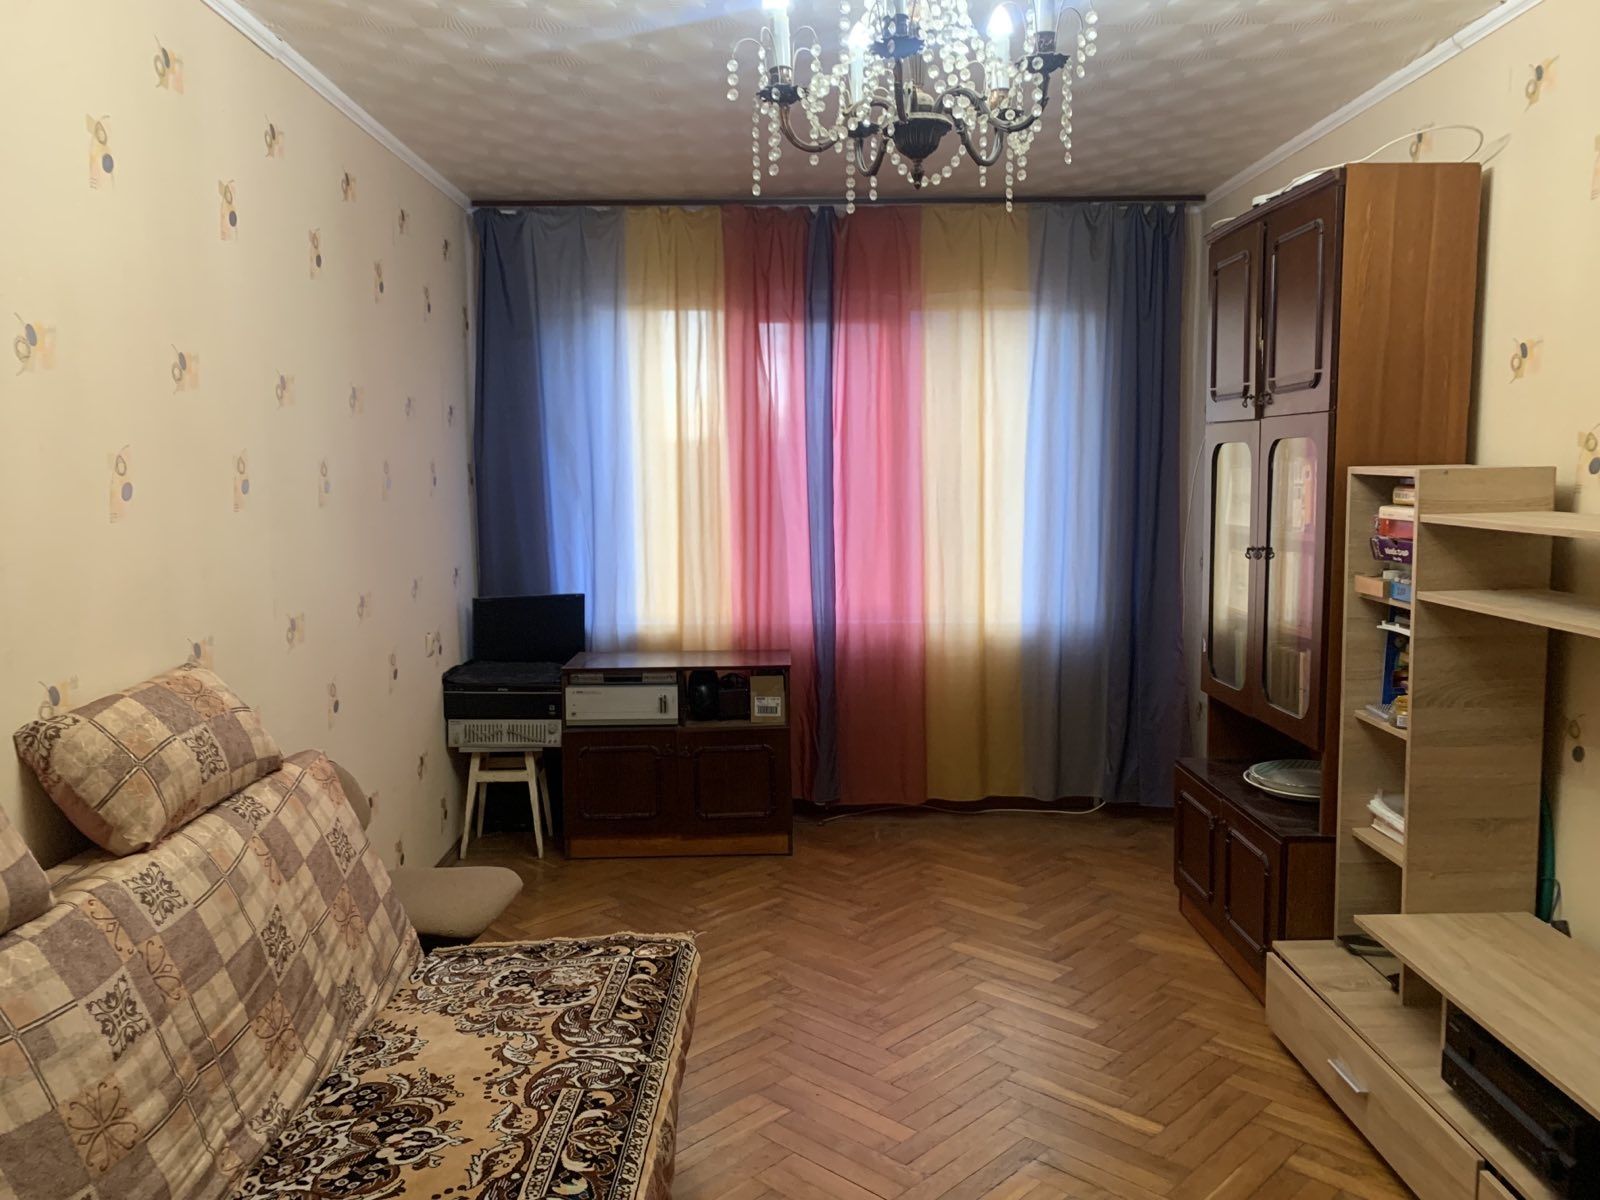 Продам 3х квартиру на Алексеевке ул.Ахсарова 1 Б.